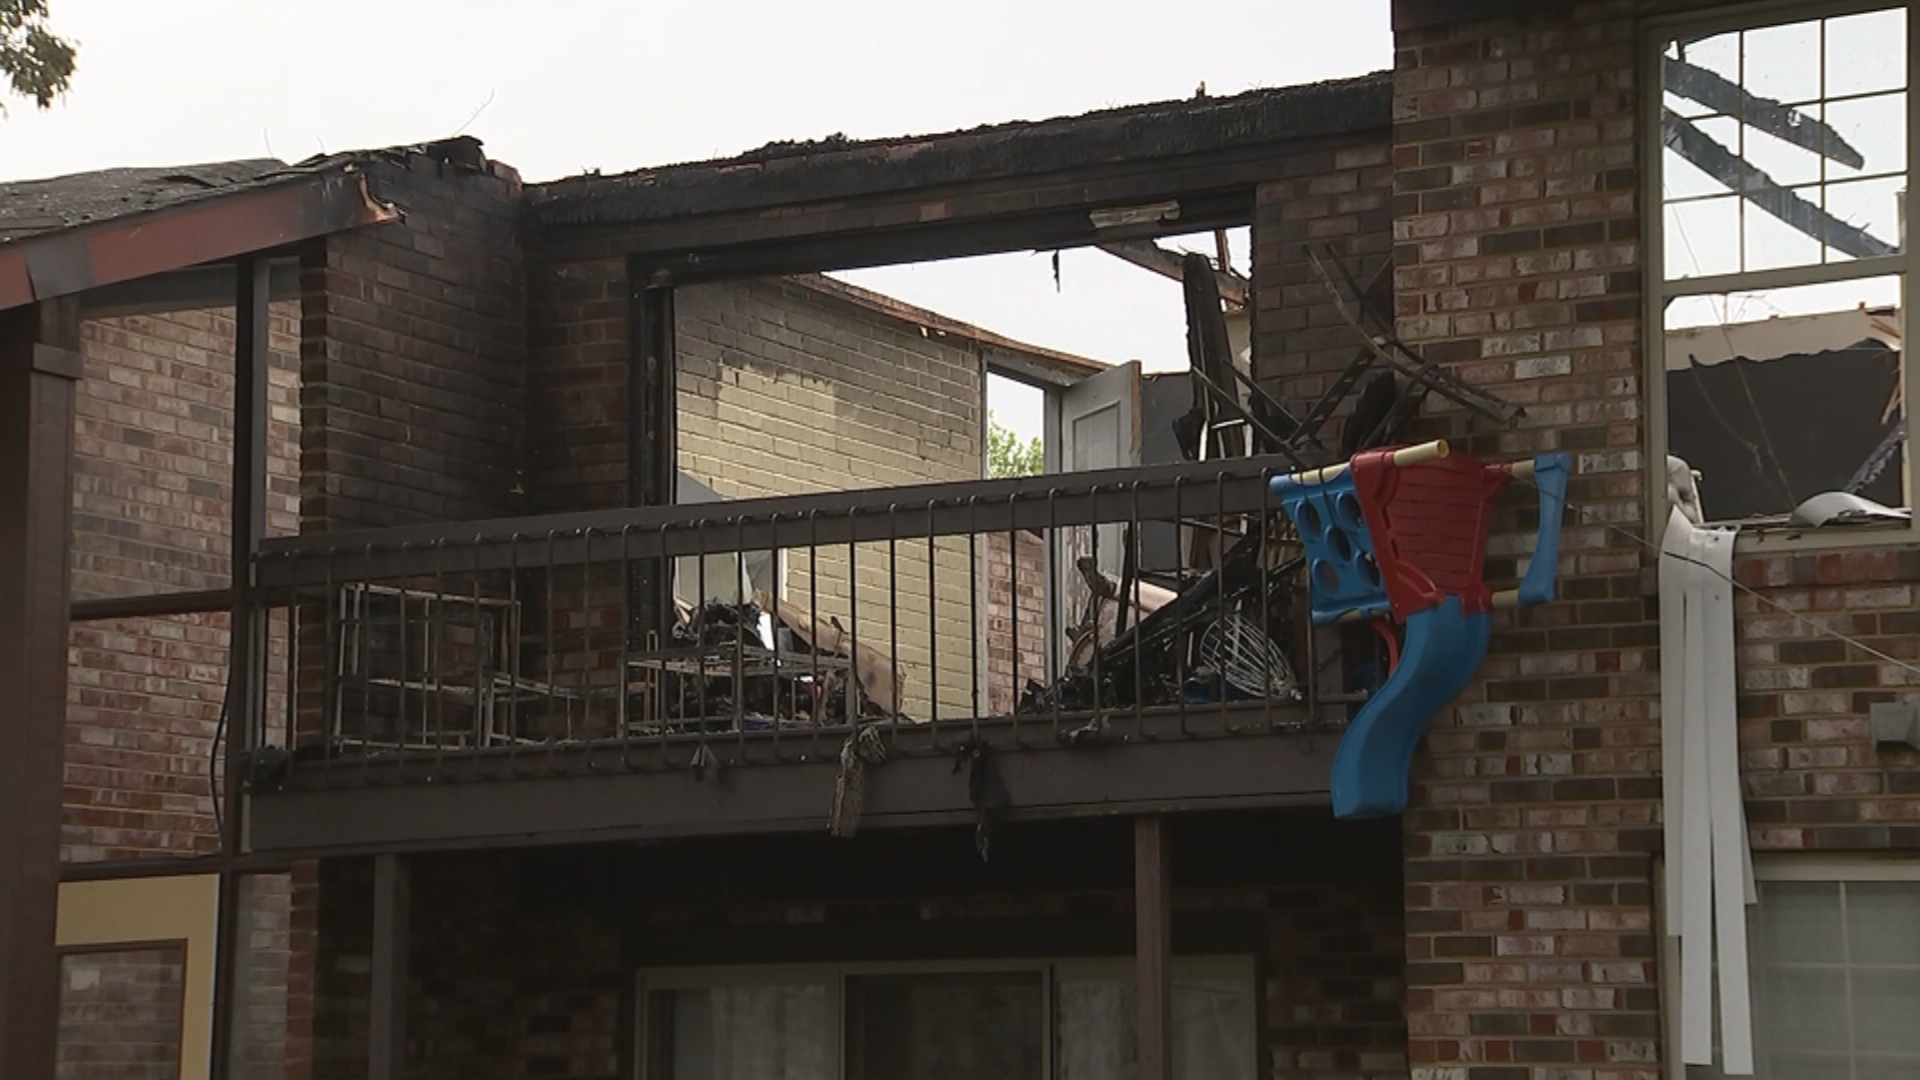 Tetangga Menuntut Jawaban Setelah Kebakaran di Apartemen Myrtle Place Di Camden Meninggalkan 9 Keluarga Terlantar – CBS Philly